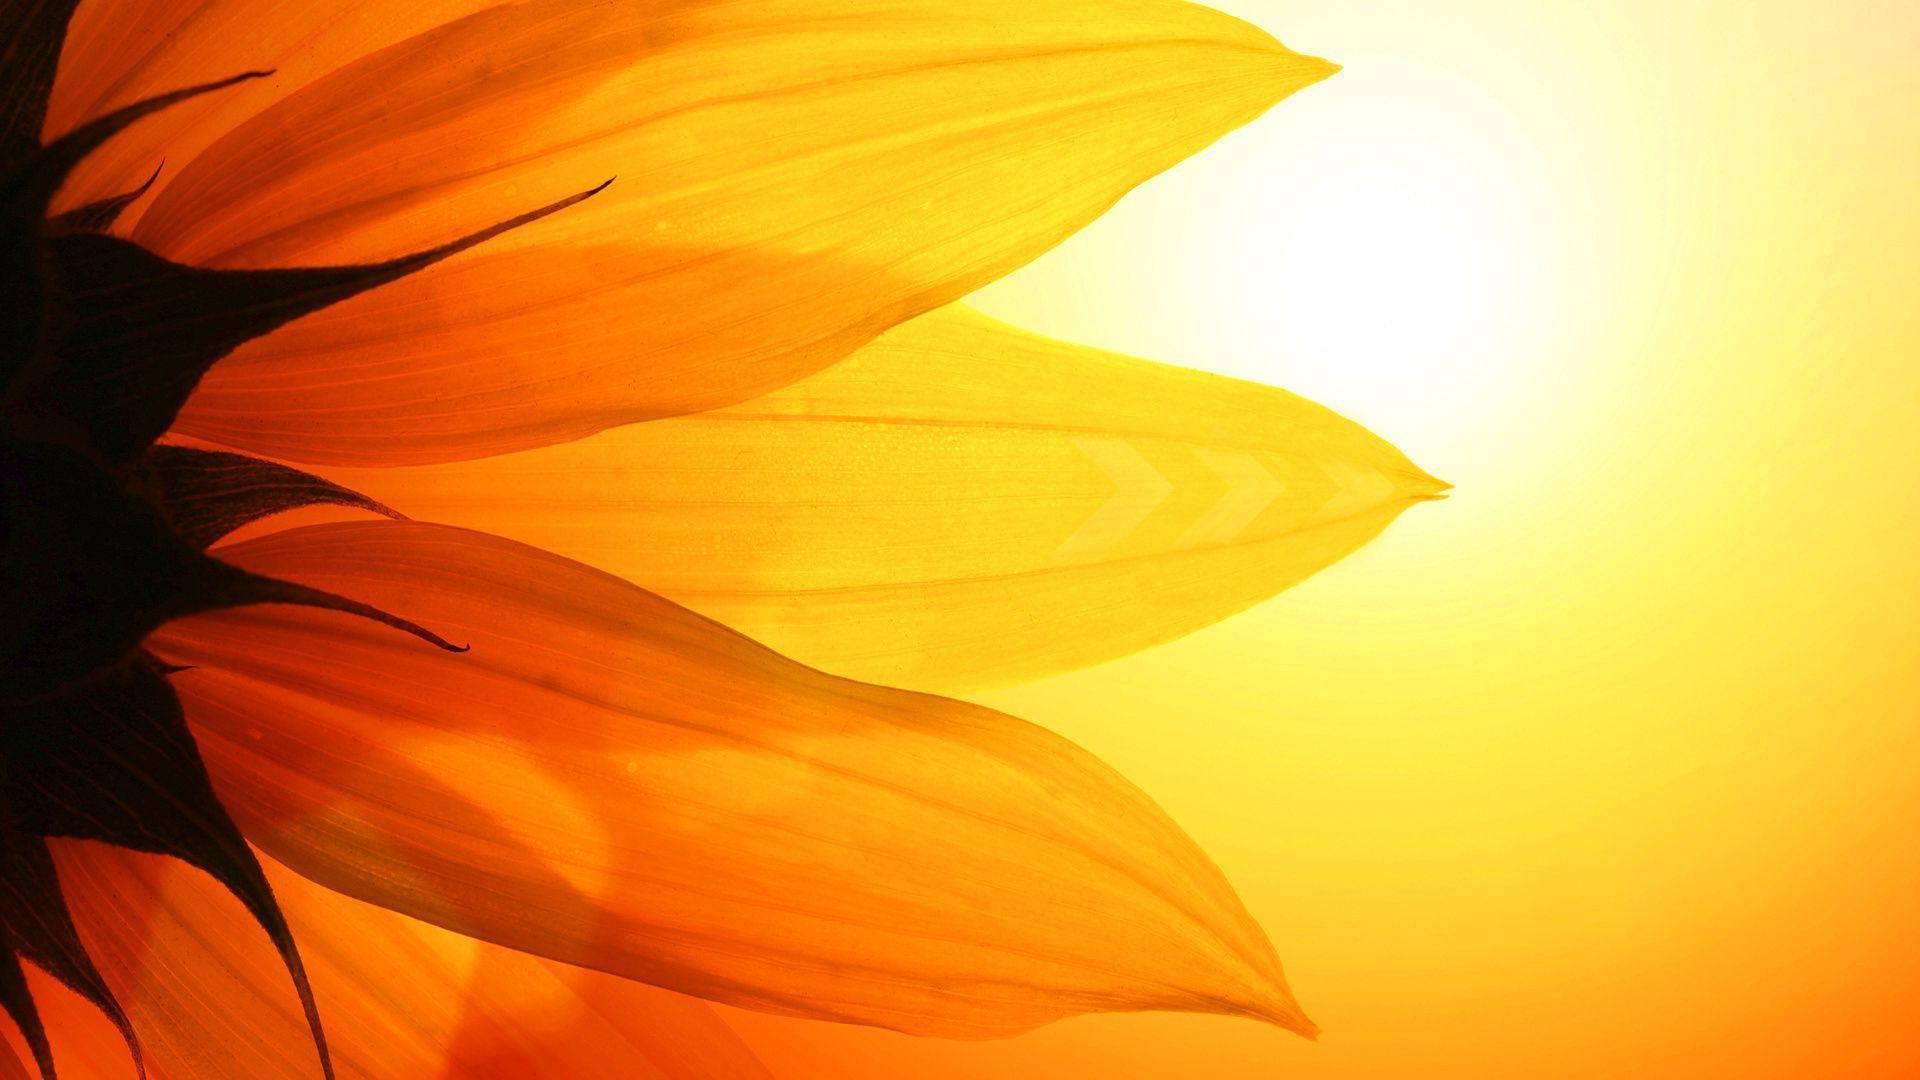 Sunflower Field Background 1920x1080px